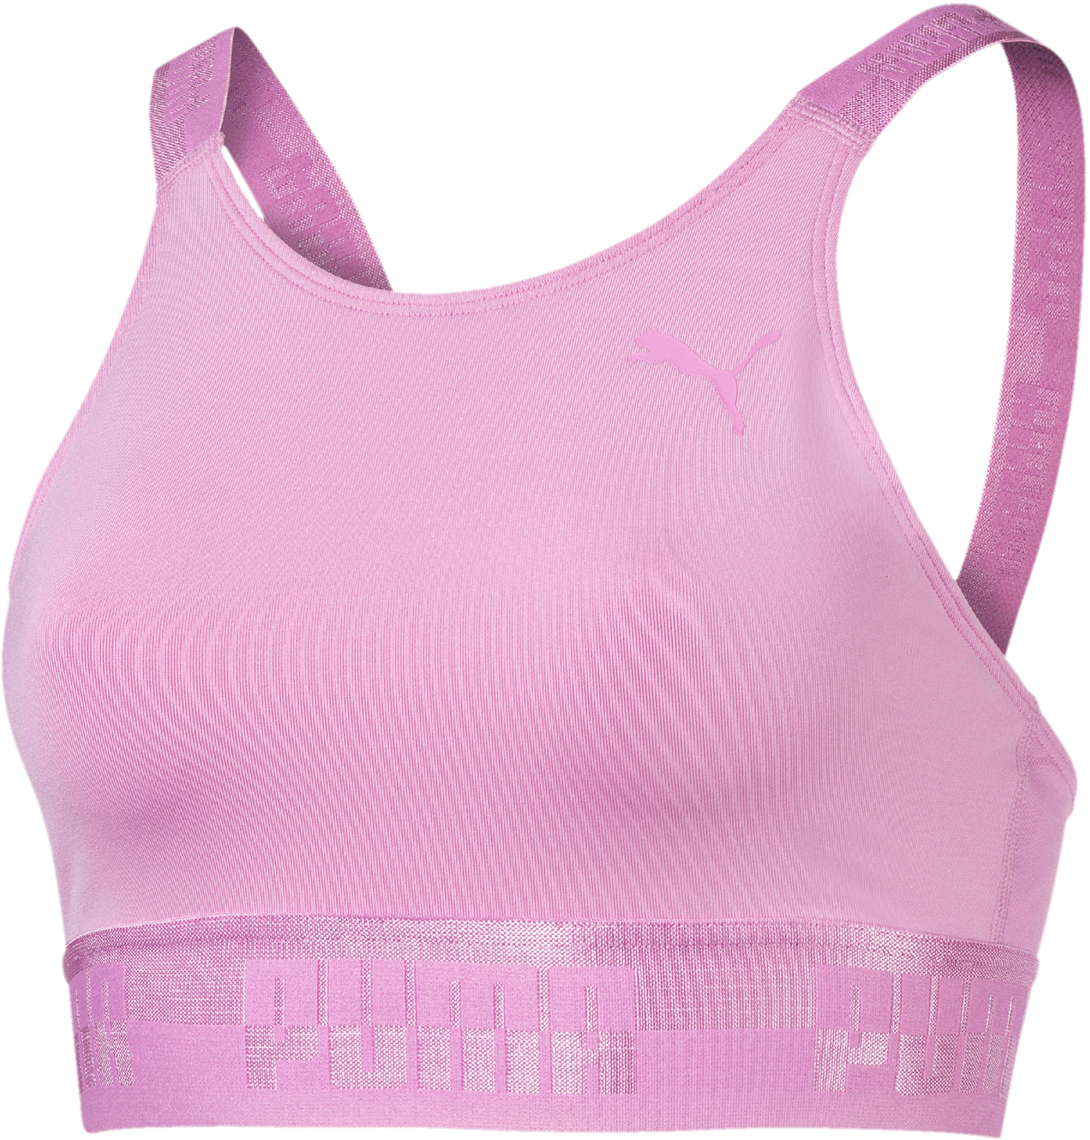 Топ-бра женский Puma Soft Sport Crop Top, цвет: розовый. 85204241. Размер L (46/48)